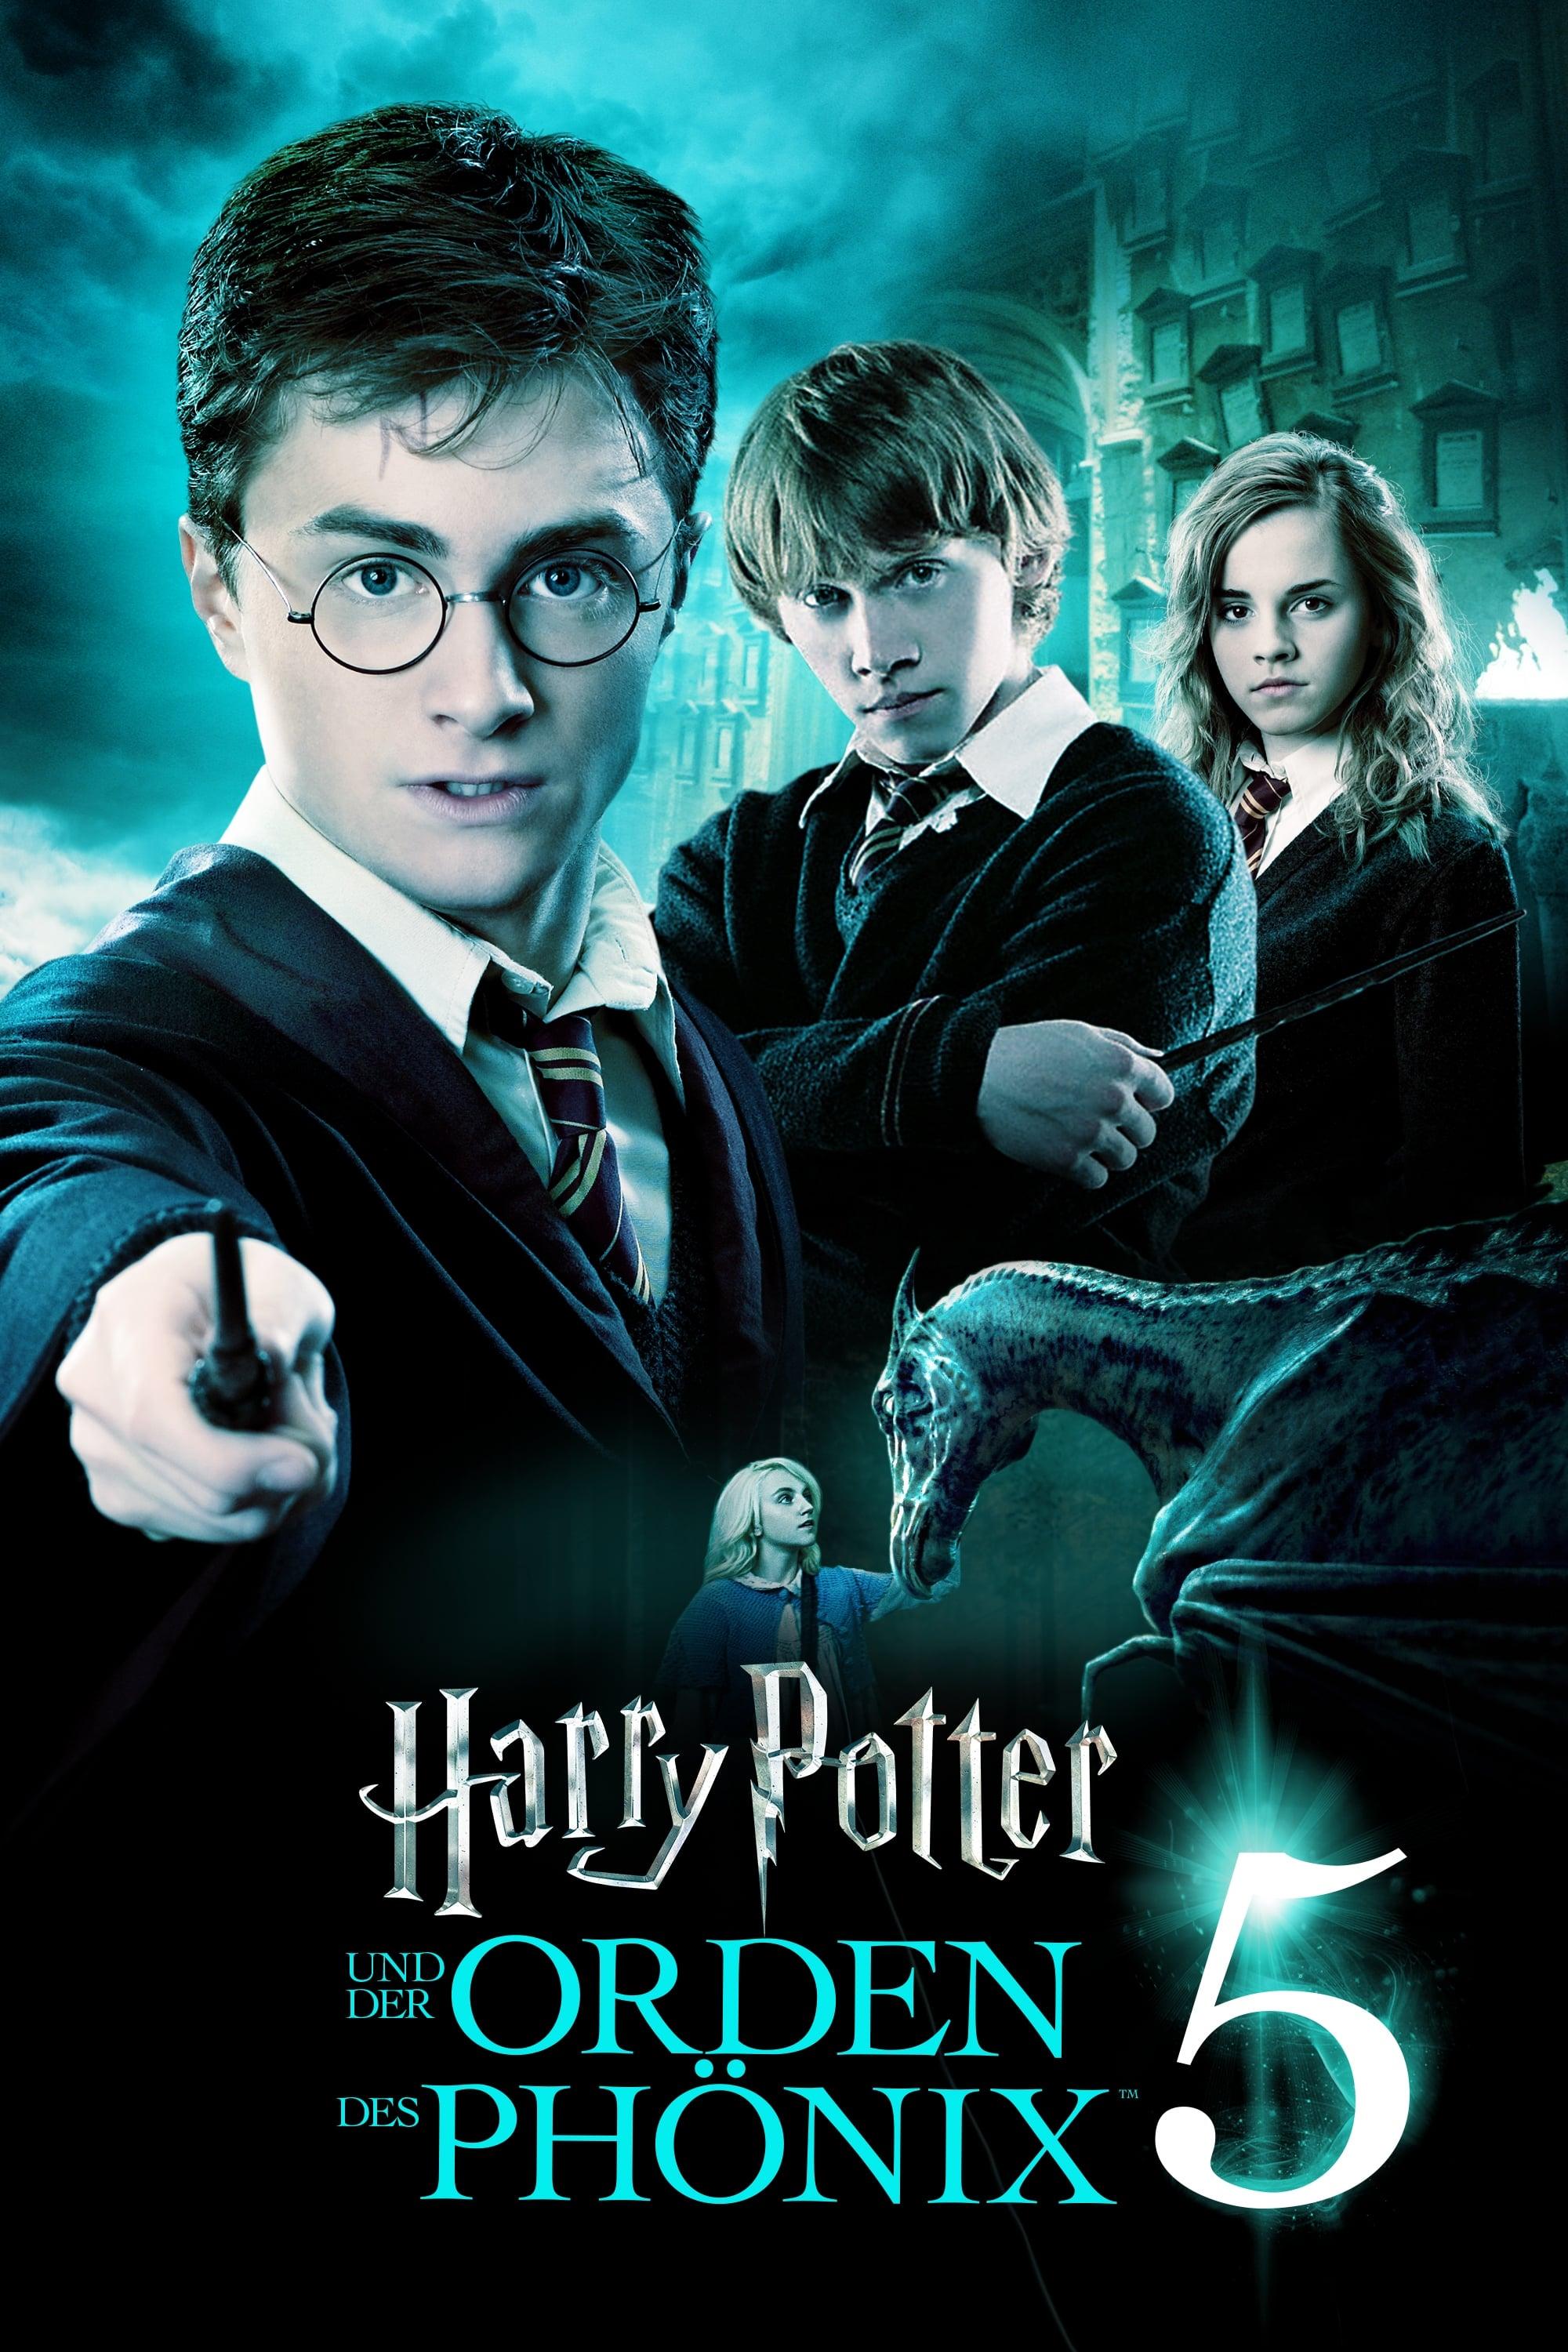 Harry Potter und der Orden des Phönix poster